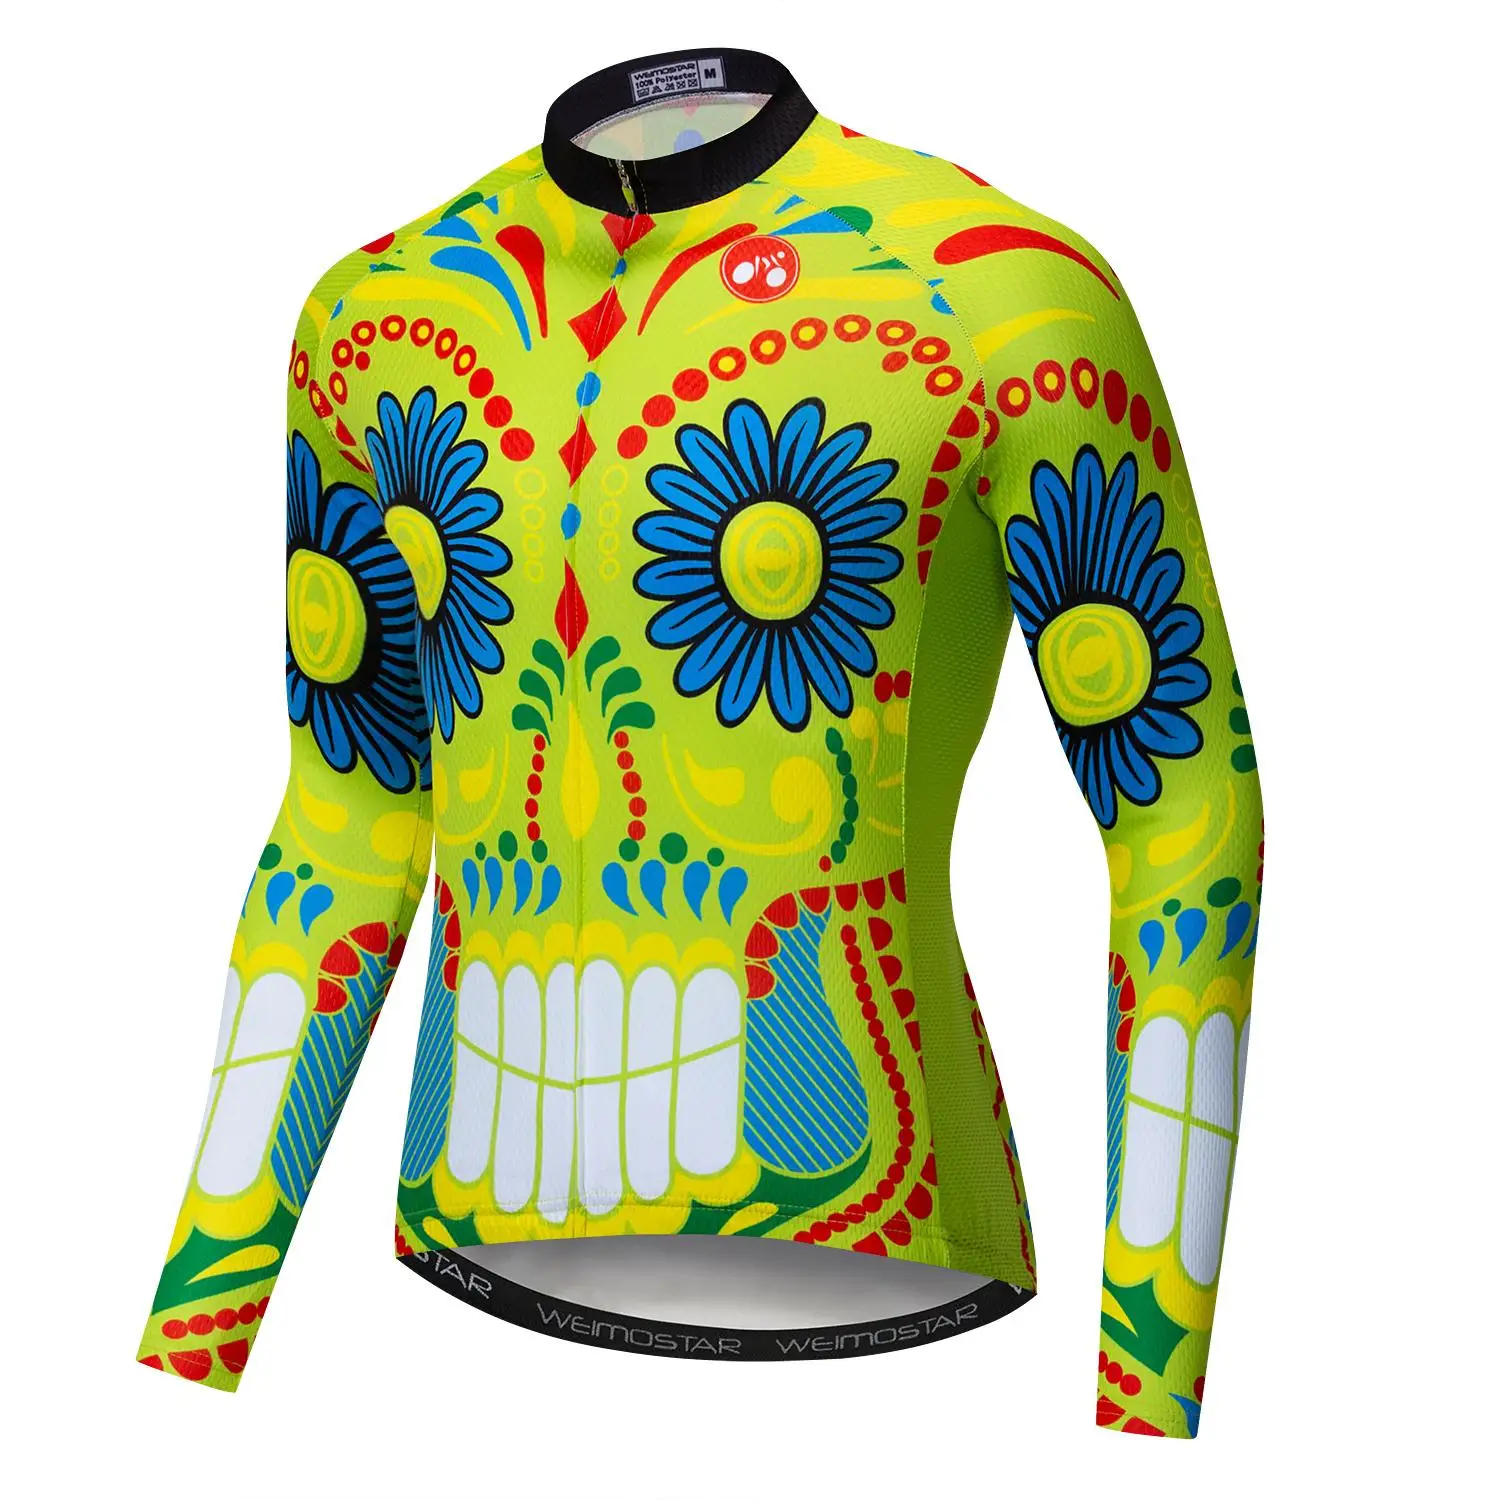 Pro Team Велоспорт Джерси MTB Велосипедный Спорт Рубашка с длинными рукавами Ropa Ciclismo Mountaion велосипед одежда Гонки Спортивная череп - Цвет: CD5103